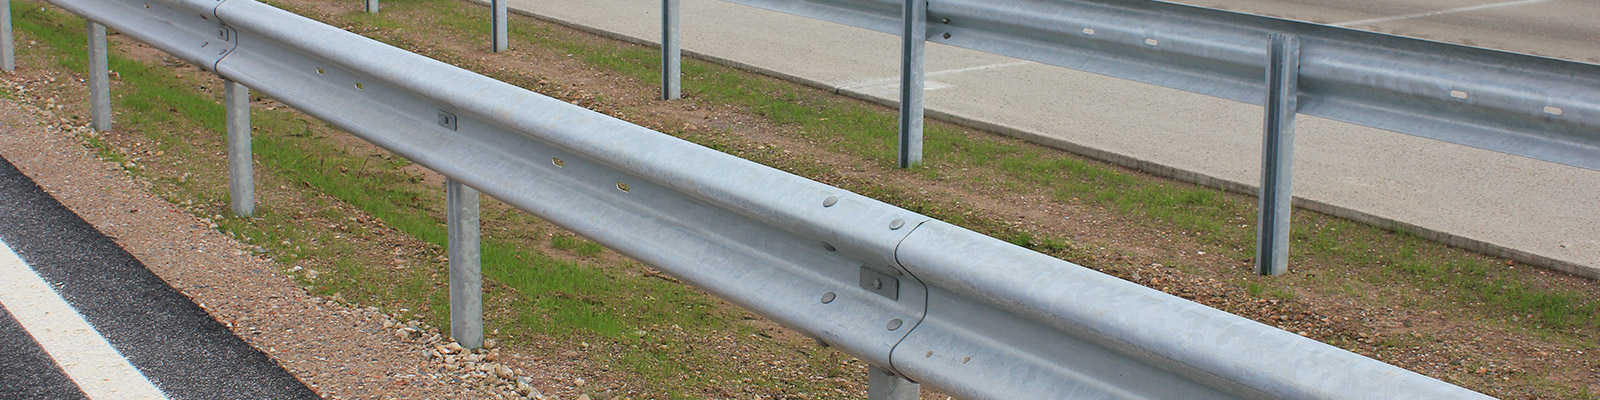 Nahaufnahme des Eco-safe Leitplankensystems auf einer Autobahn, hergestellt von Meiser Strassenausstattung.